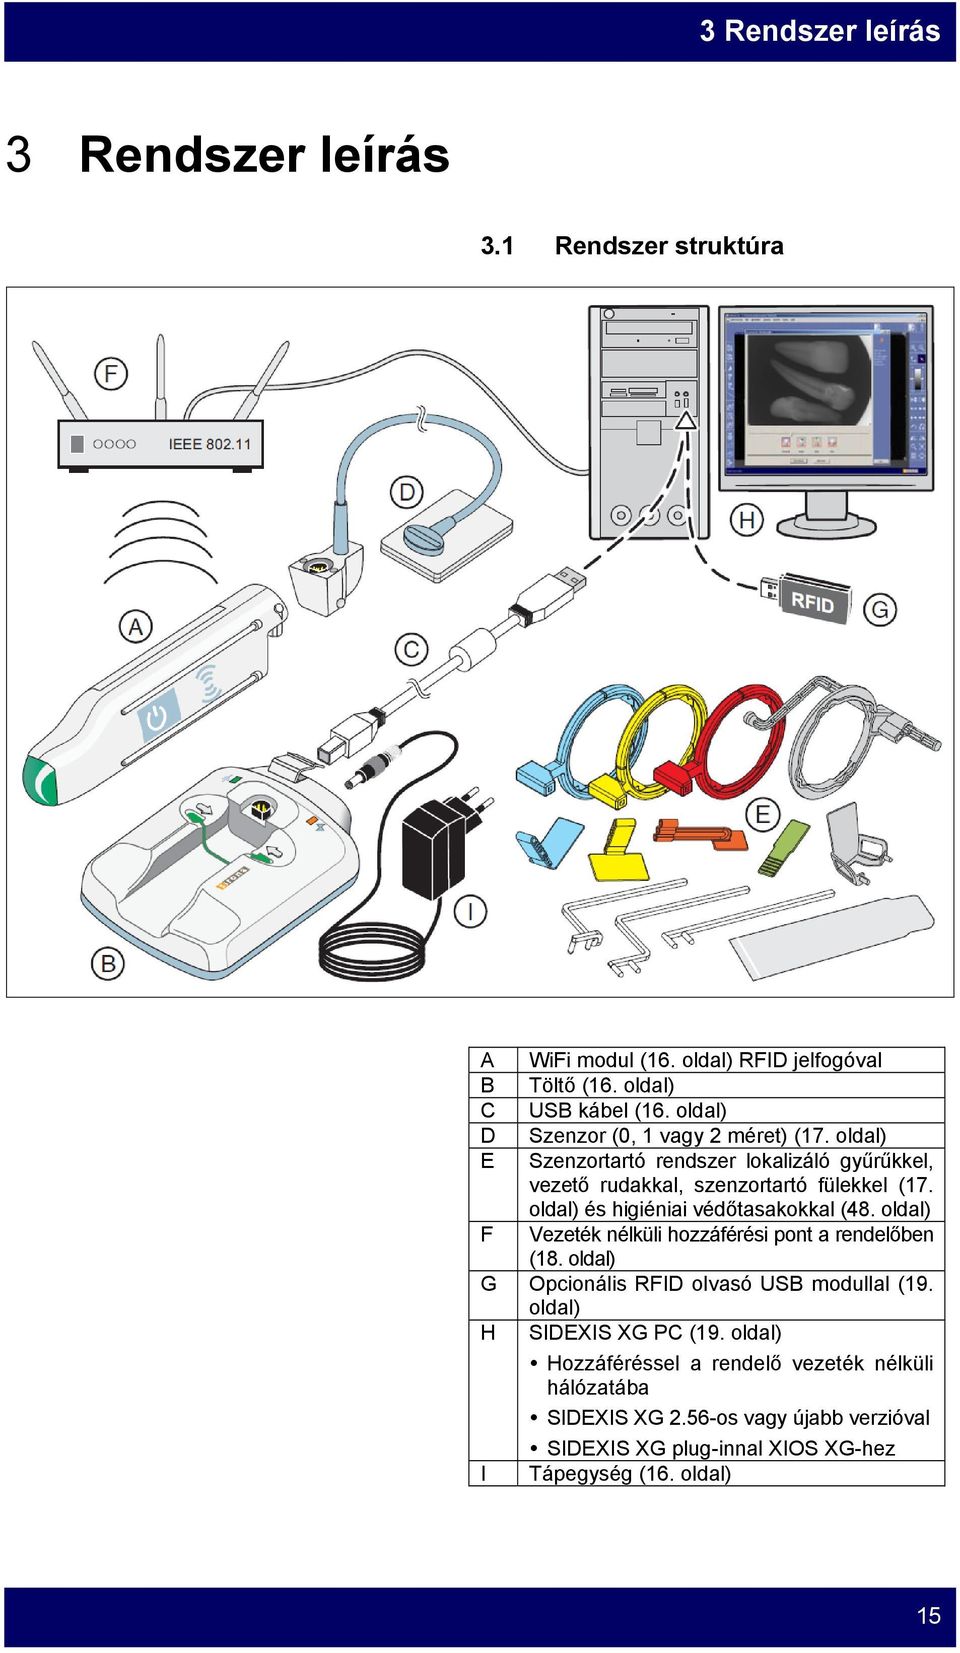 oldal) és higiéniai védőtasakokkal (48. oldal) F Vezeték nélküli hozzáférési pont a rendelőben (18. oldal) G Opcionális RFID olvasó USB modullal (19.